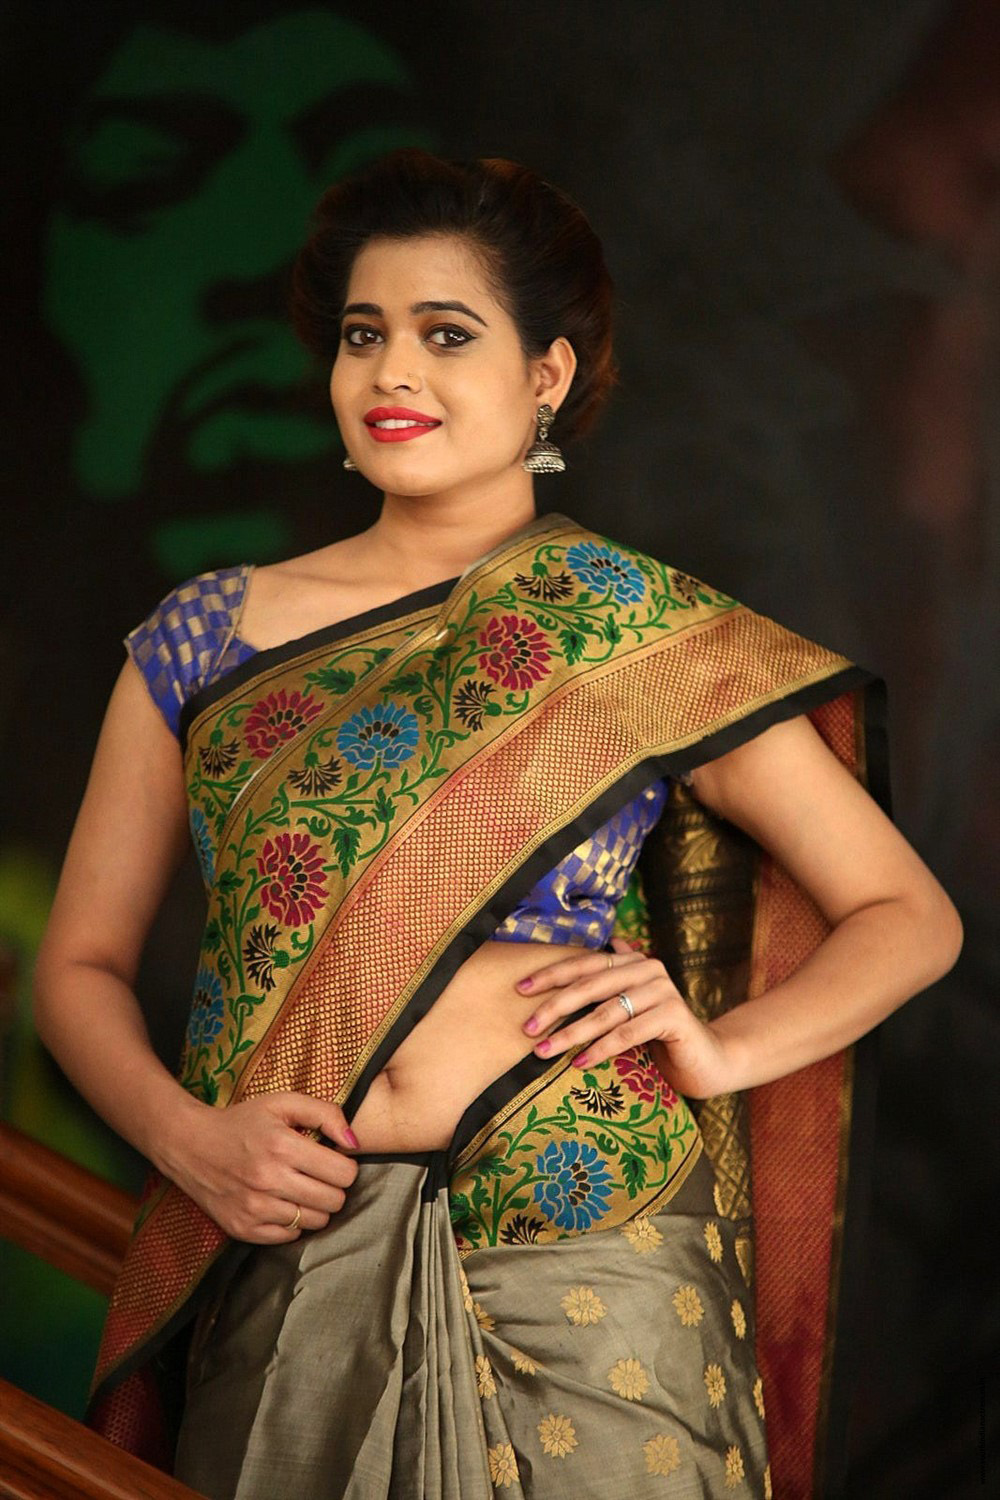 Dipali Raut at Silk India Expo Curtain Raiser - South Indian Actress